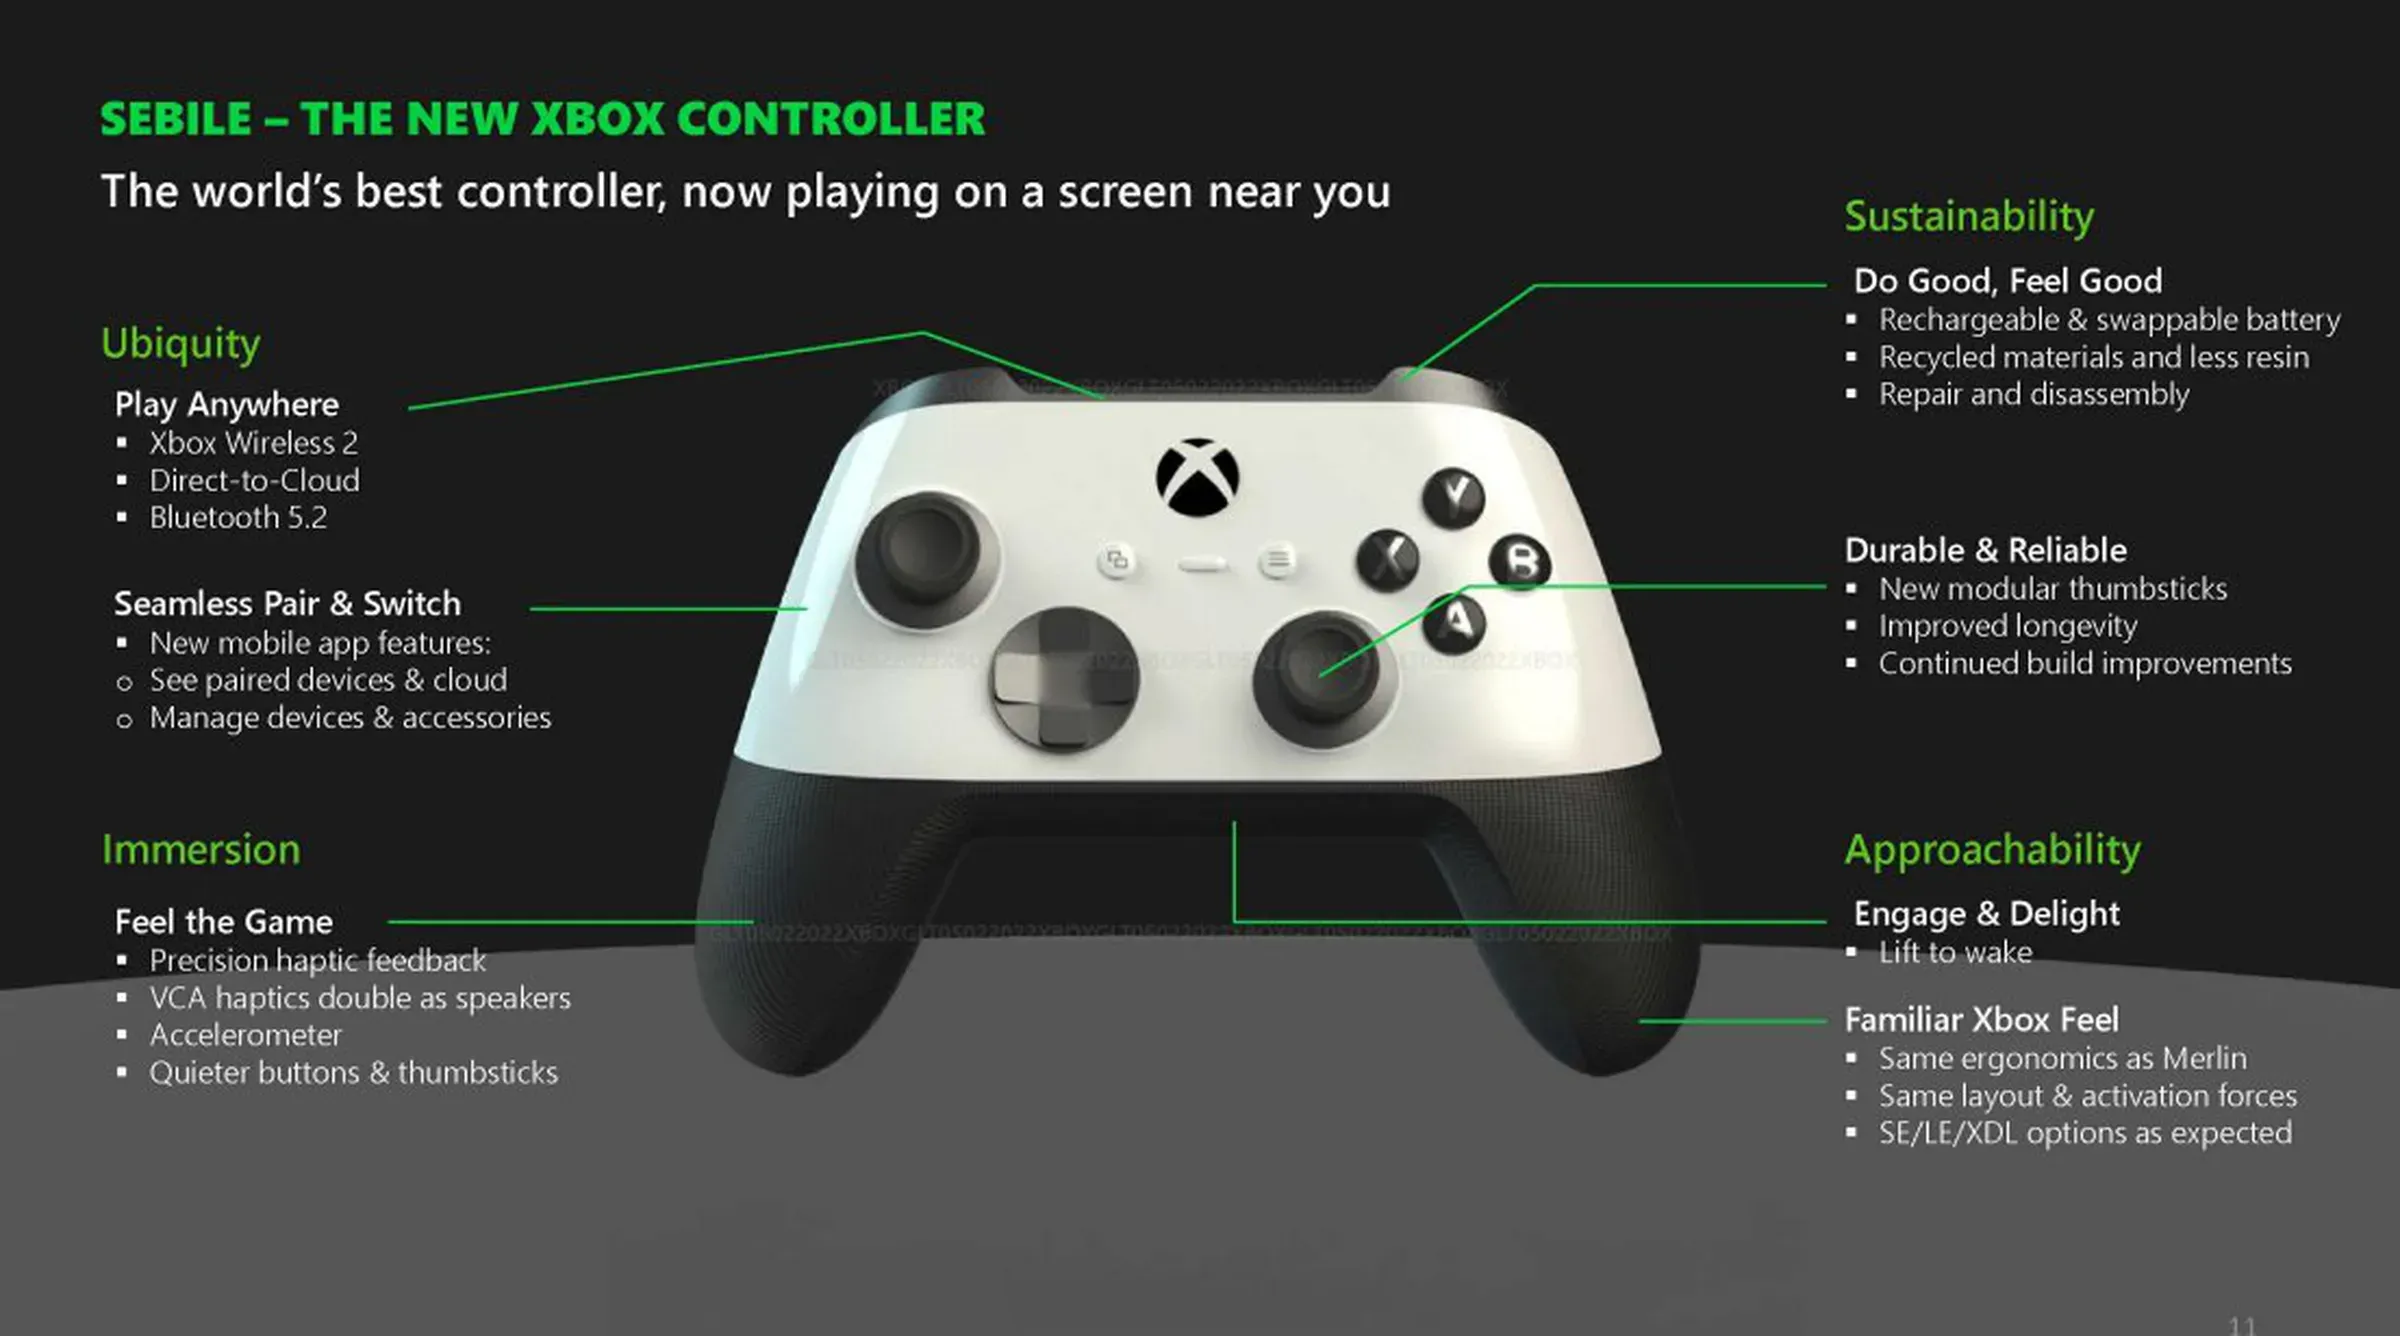 Imagen que muestra un controlador de Xbox llamado "Sebile," que tiene la mitad superior blanca y la mitad inferior negra.